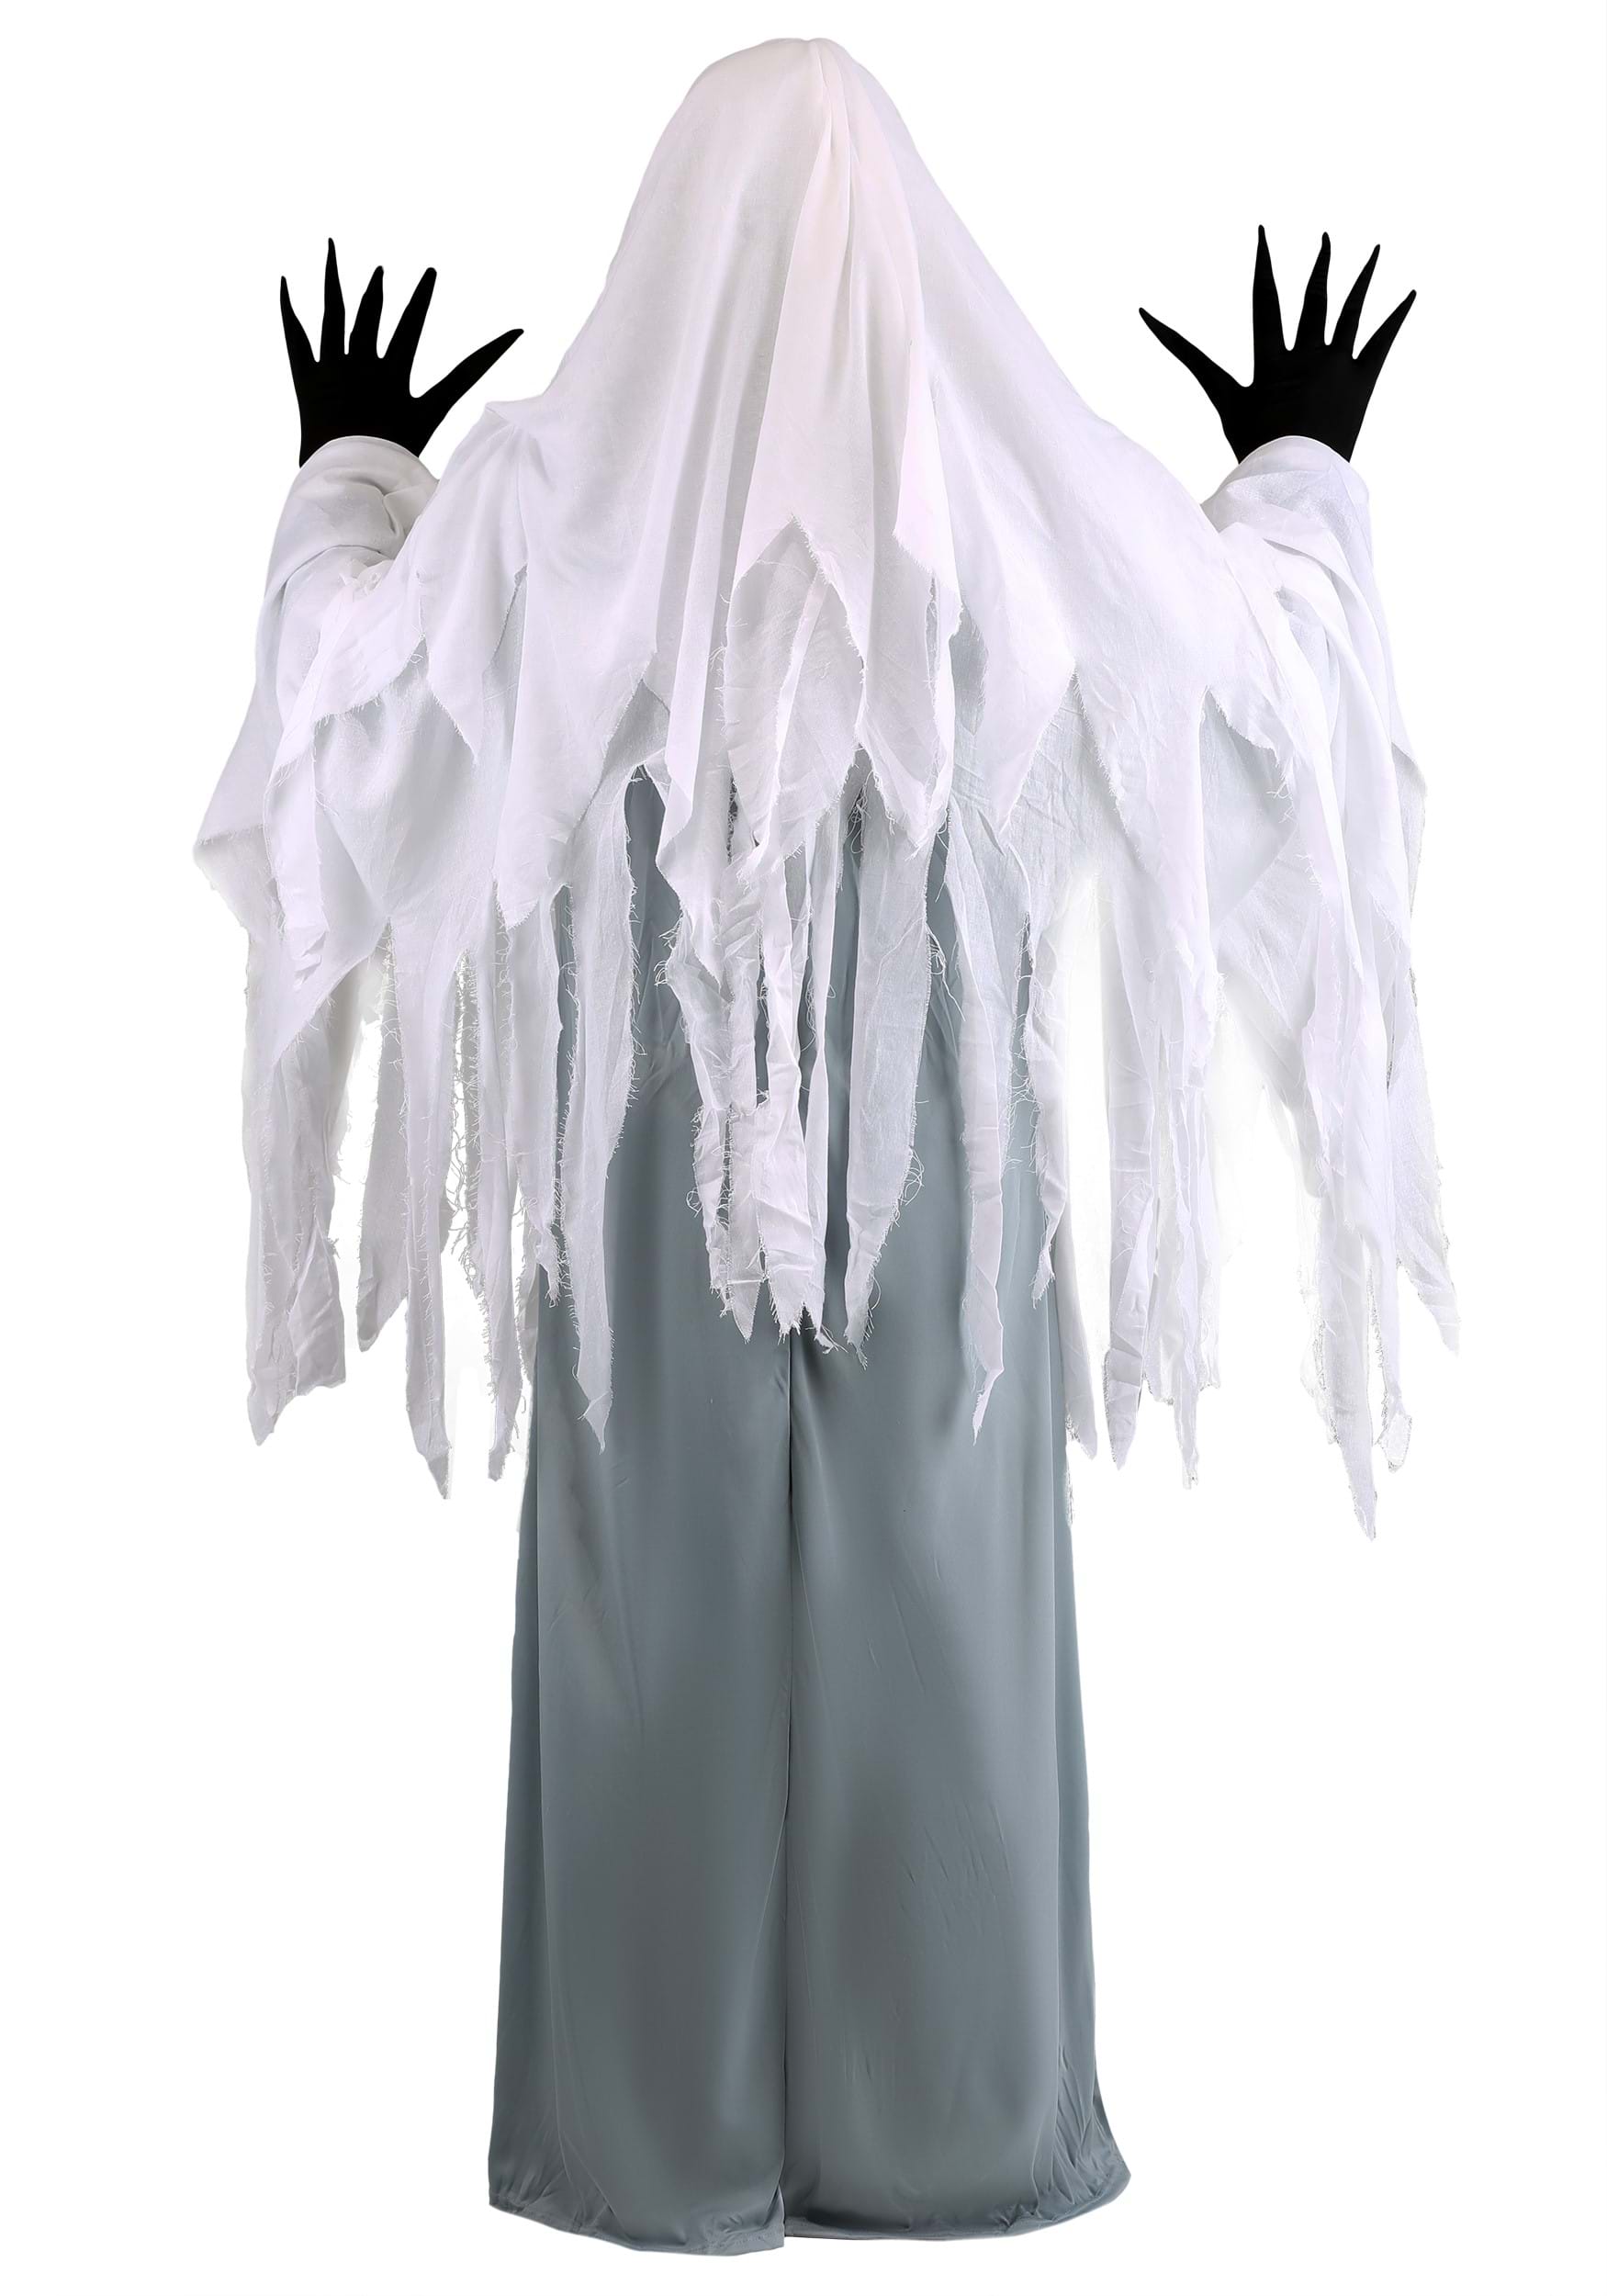 Spooky Ghost Adult Fancy Dress Costume